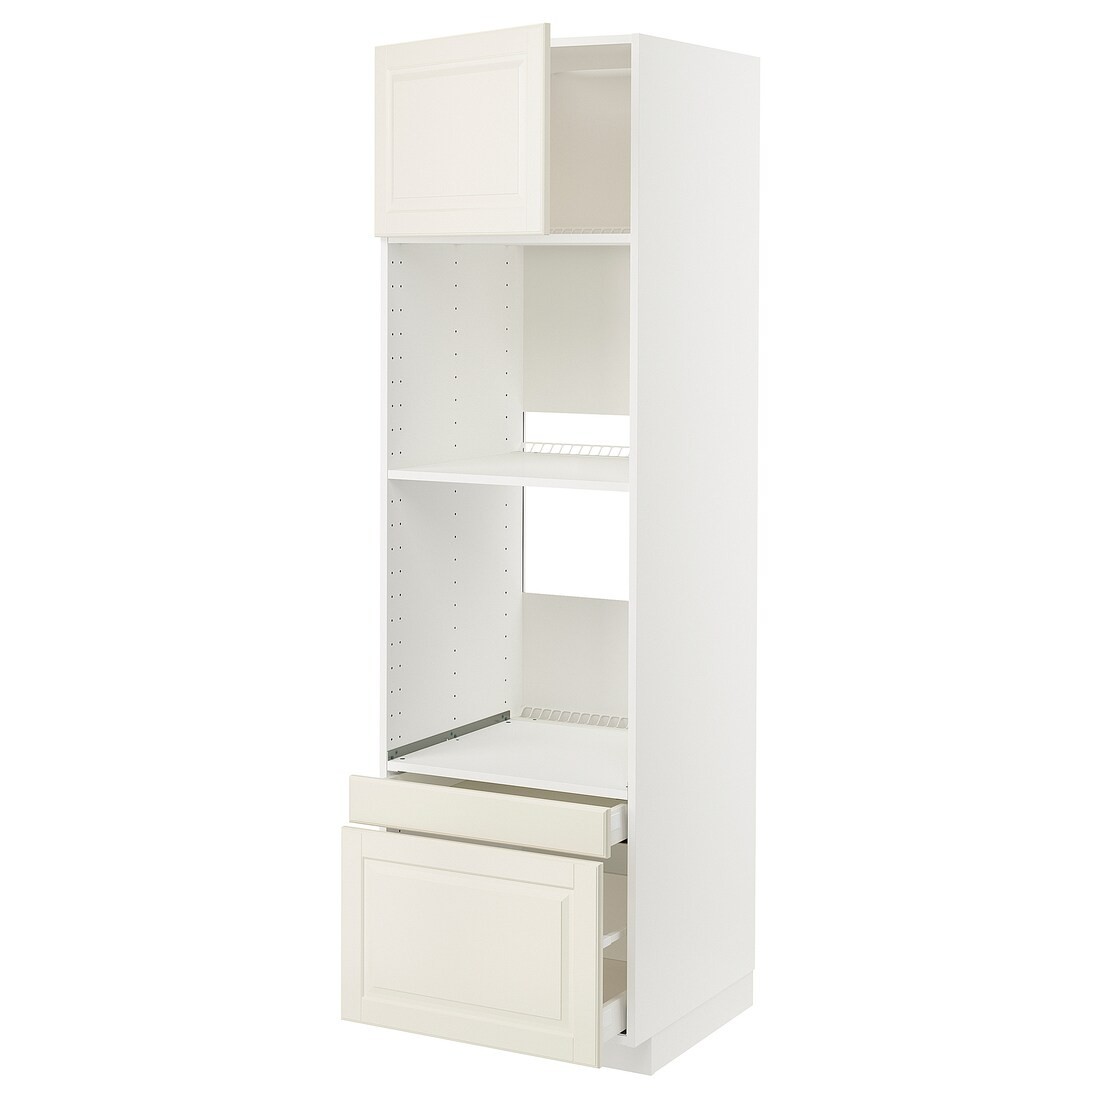 IKEA METOD МЕТОД / MAXIMERA МАКСИМЕРА Высокий шкаф для духовки комби с дверцей / ящиками, белый / Bodbyn кремовый, 60x60x200 см 89459108 | 894.591.08